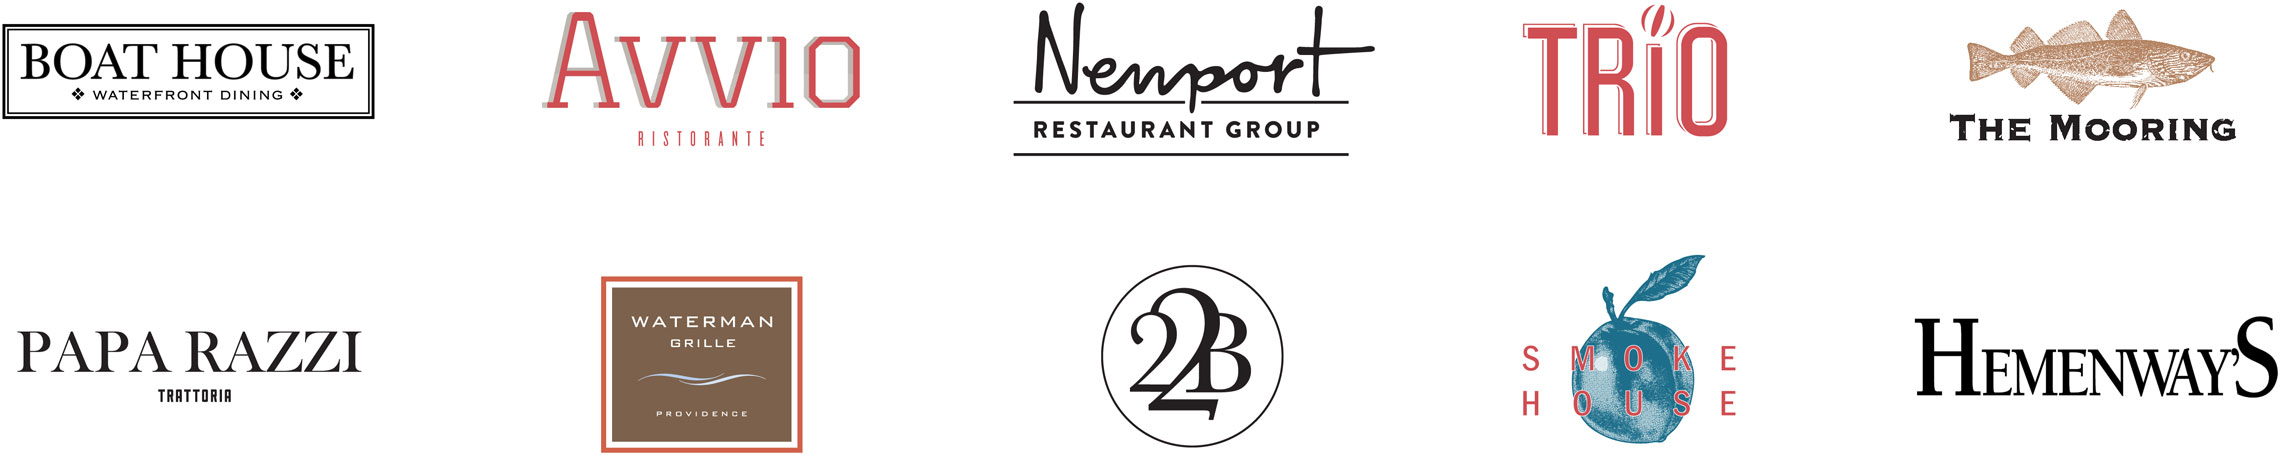 Newport Restaurant Group logos for all restaurants